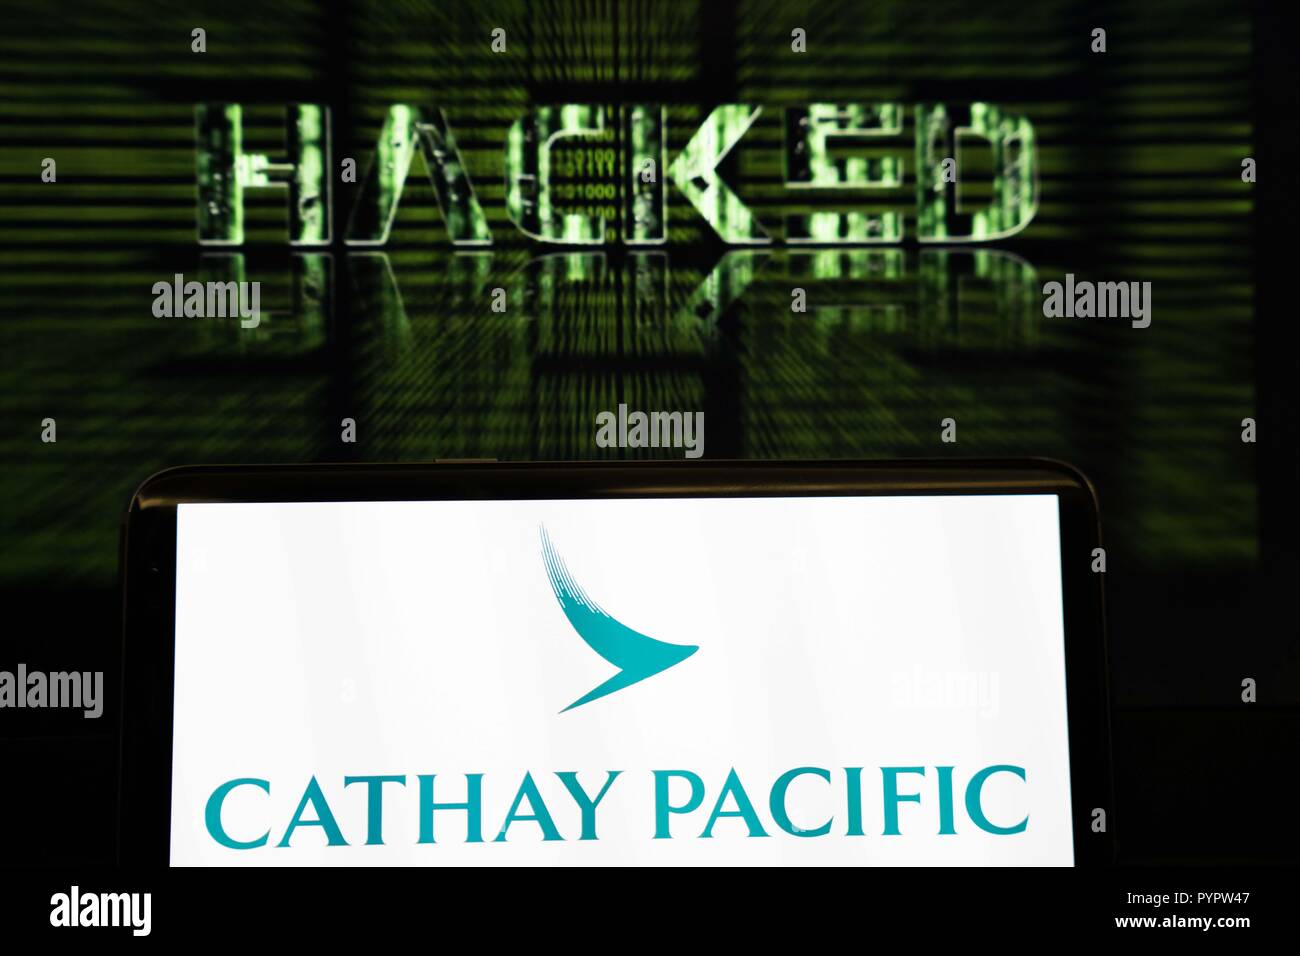 Cathay Pacific Logo auf einem Smartphone vor einem Hintergrund, der liest gehackt. Die Hong Kong Fluggesellschaft Cathay Pacific hat berichtet, dass es eine wichtige Daten Leck wurde im März 2018 mit Daten von rund 9,4 Millionen Passagiere geschah, war während der Verletzung beeinträchtigt, mit 860.000 Reisepass zahlen, 245.000 Hong Kong Identity Card zahlen, 403 Kreditkartennummern und 27. Die Nummer der Kreditkarte ist abgelaufen, ohne dass CVV zugegriffen wird. Stockfoto